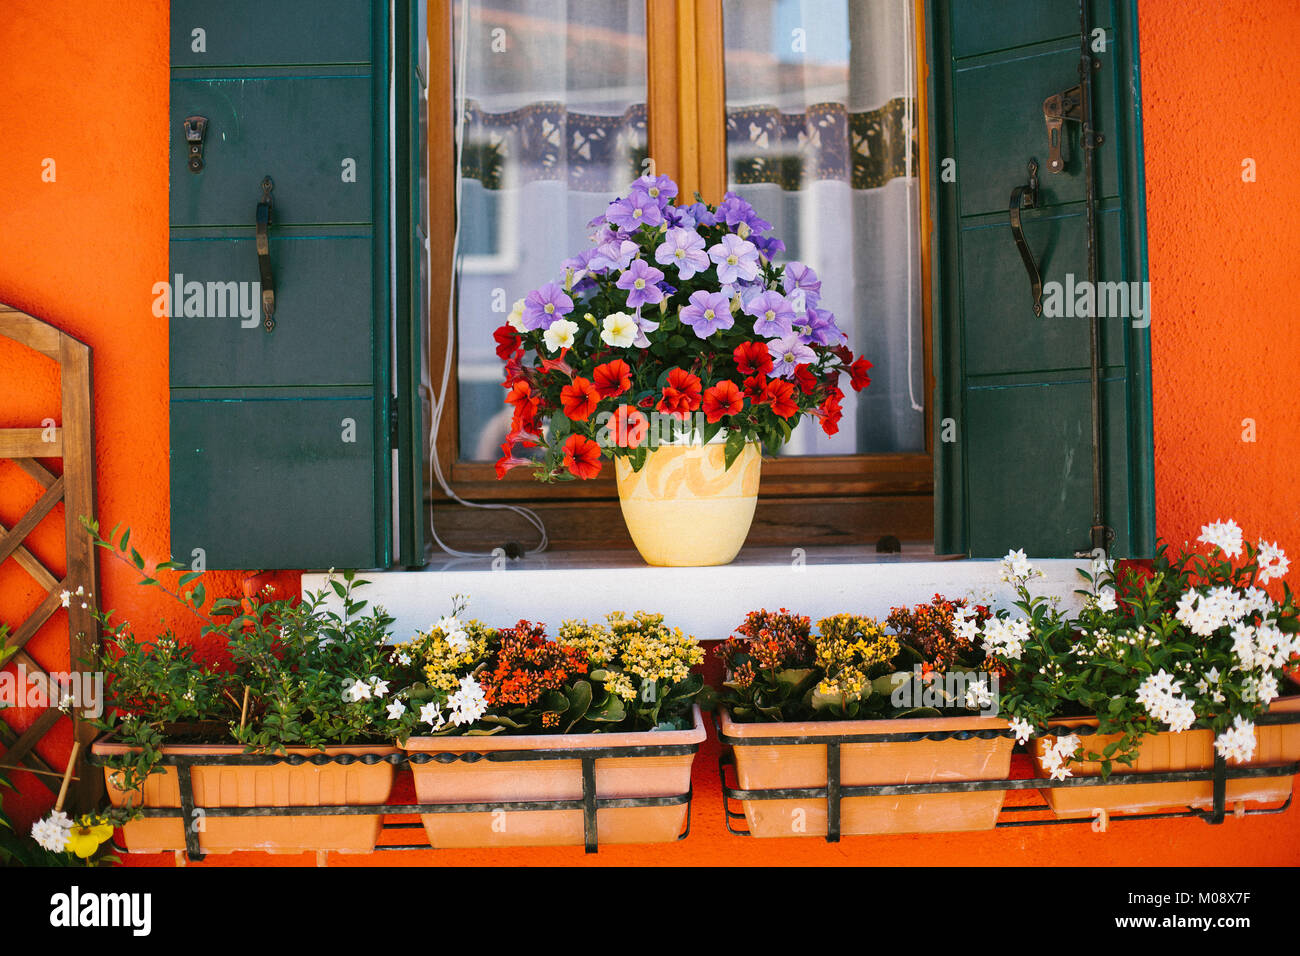 Impianto pot con rosso e viola i fiori sul davanzale di una casa arancione in Burano Venezia Italia. Foto Stock